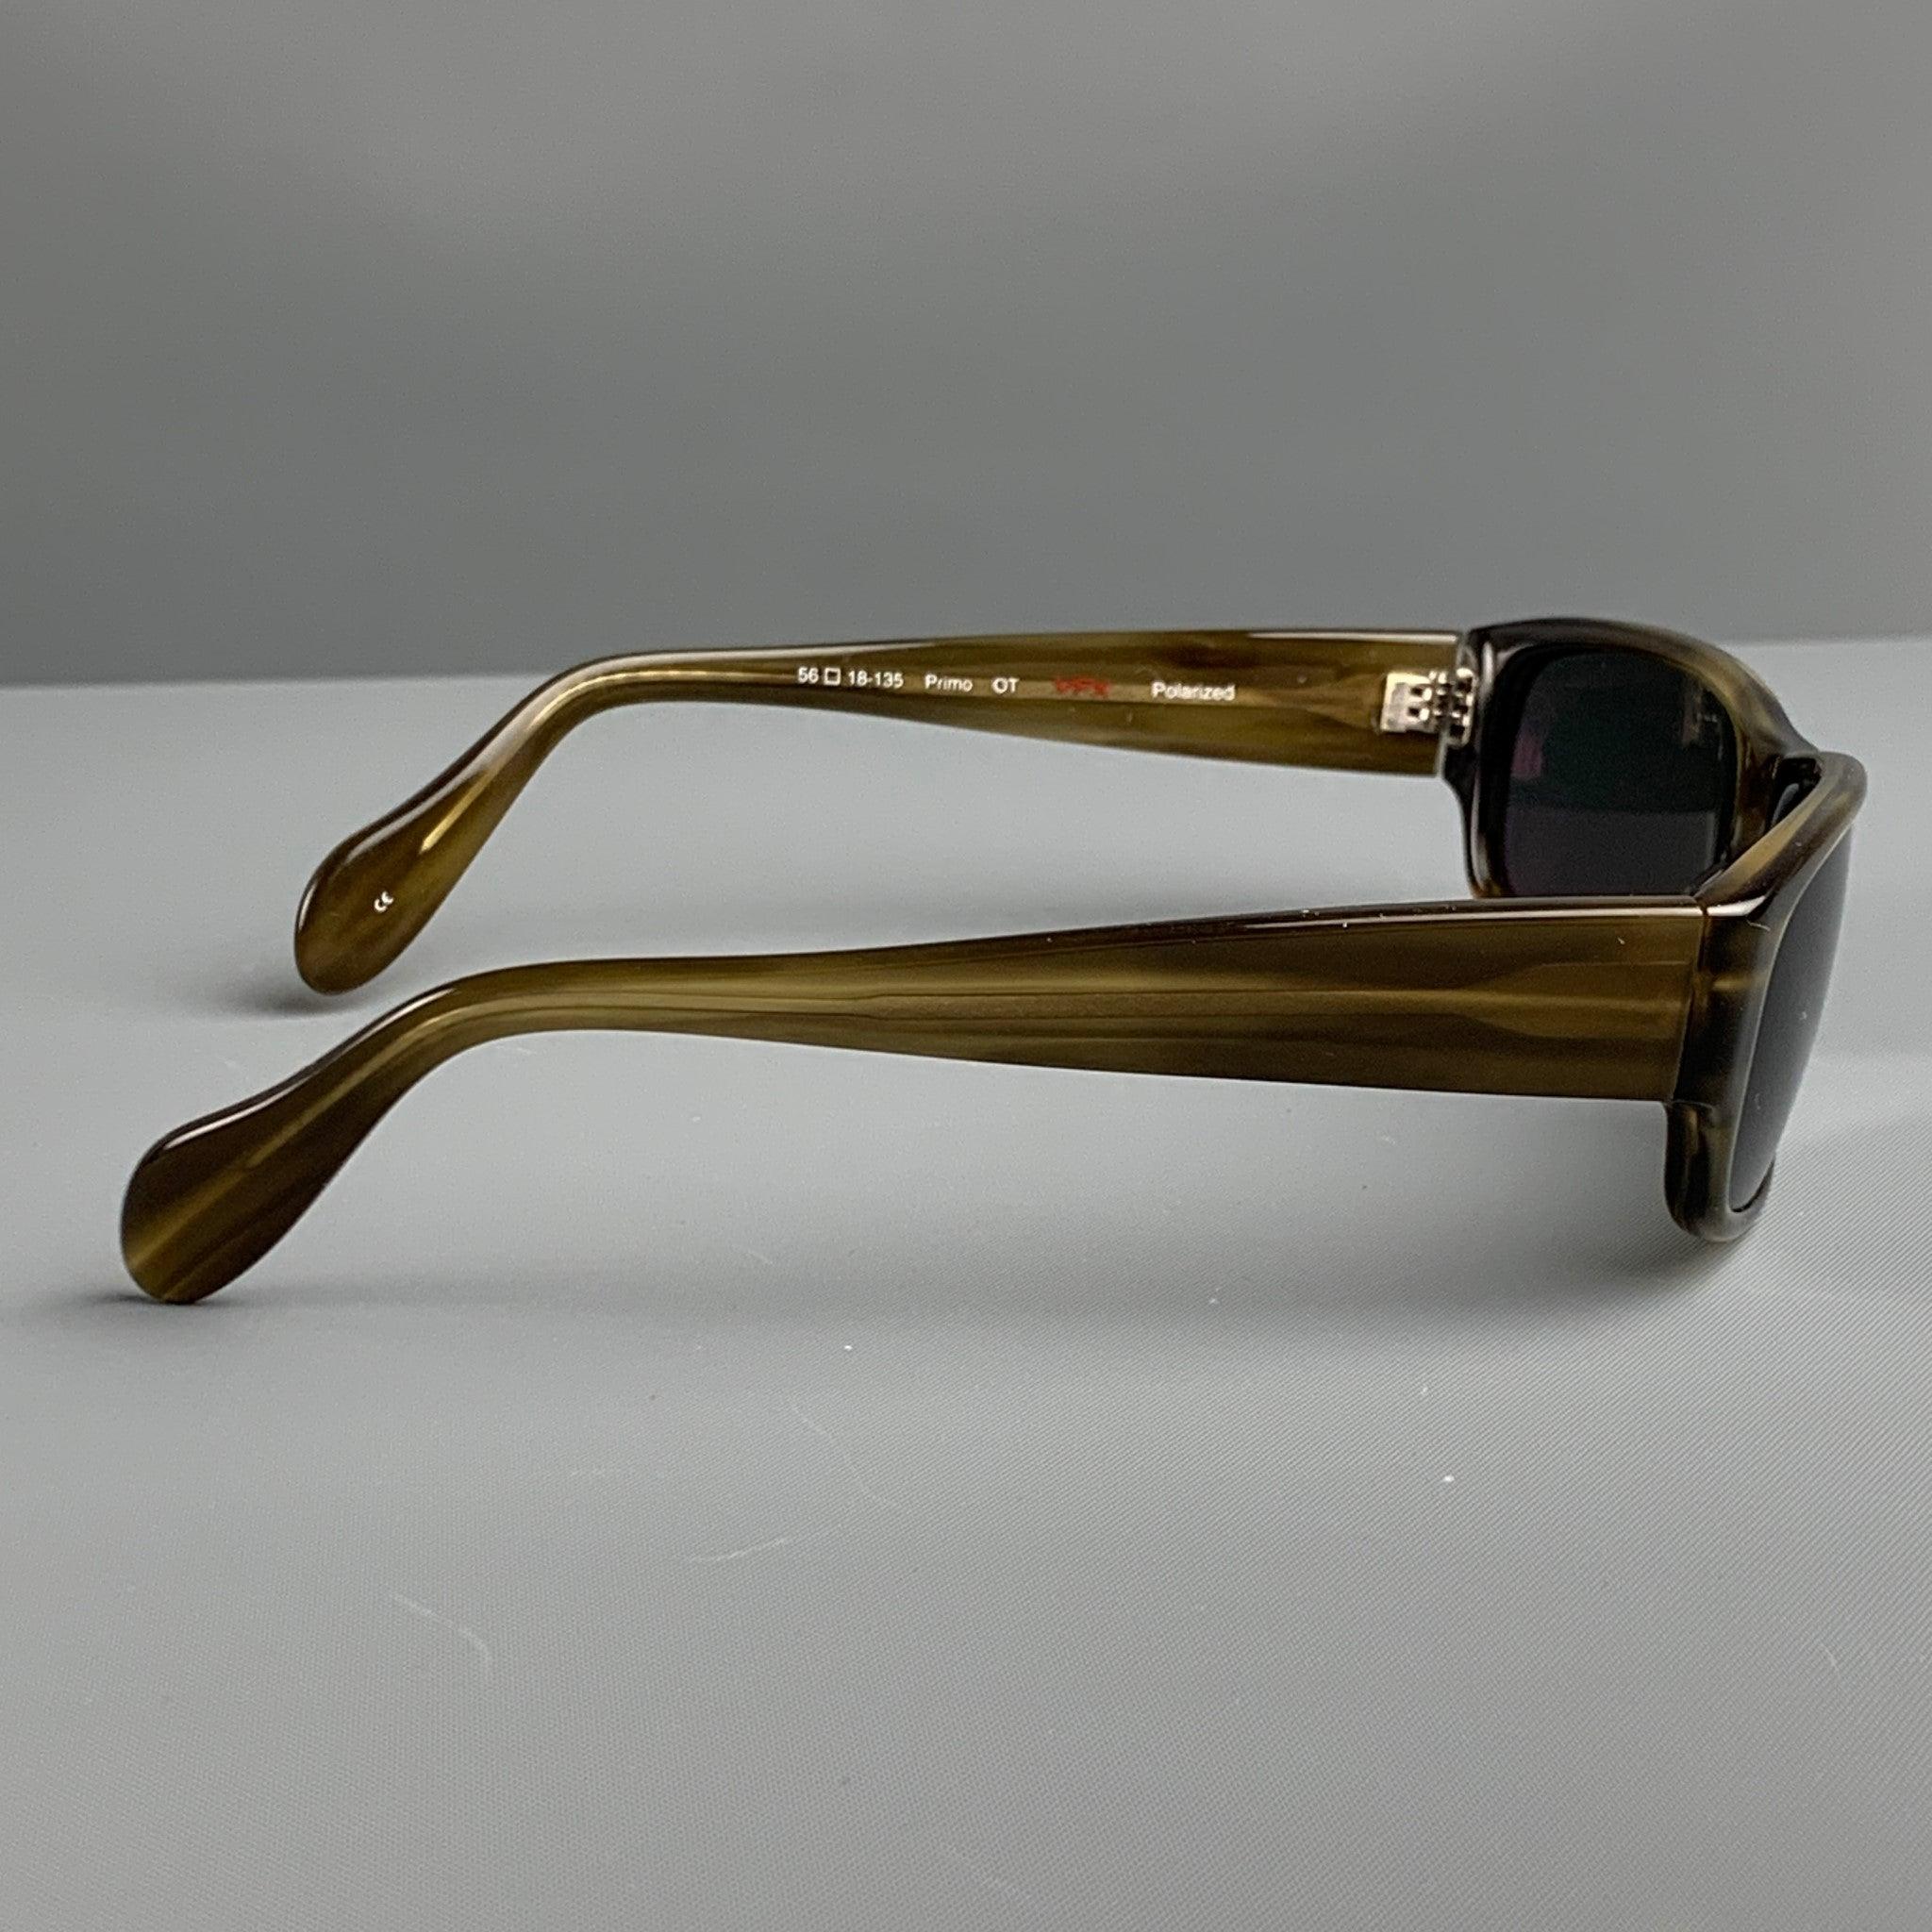 Les lunettes de soleil OLIVER PEOPLES sont proposées en acétate marron avec des verres polarisants teintés. Fabriqué au Japon. Très bon état. 

Marqué :   56 18-135 

Mesures : 
  Longueur : 15 cm. Hauteur : 4 cm. 
  
  
 
Référence :